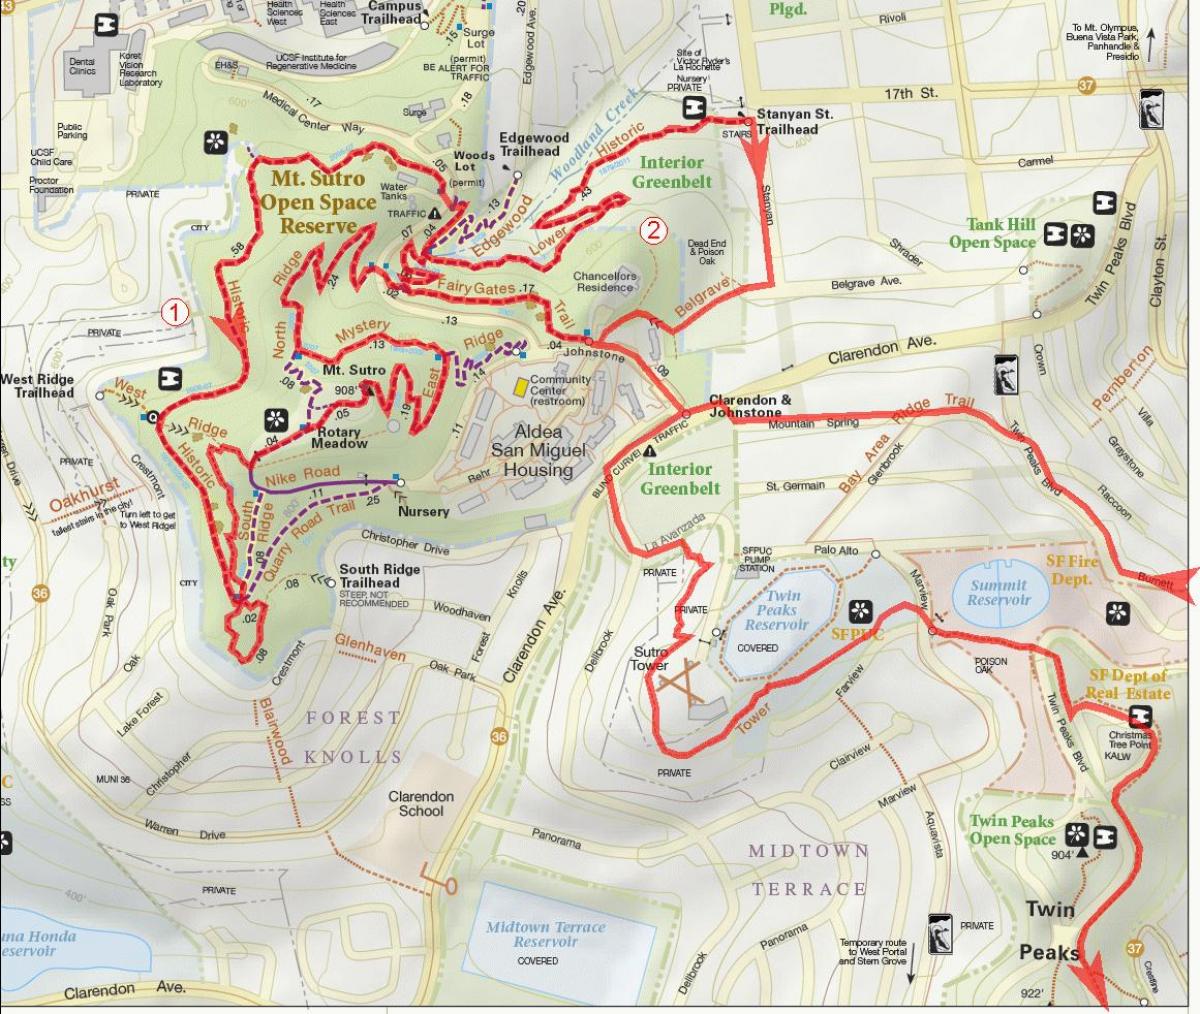 Mappa della zona della baia bike